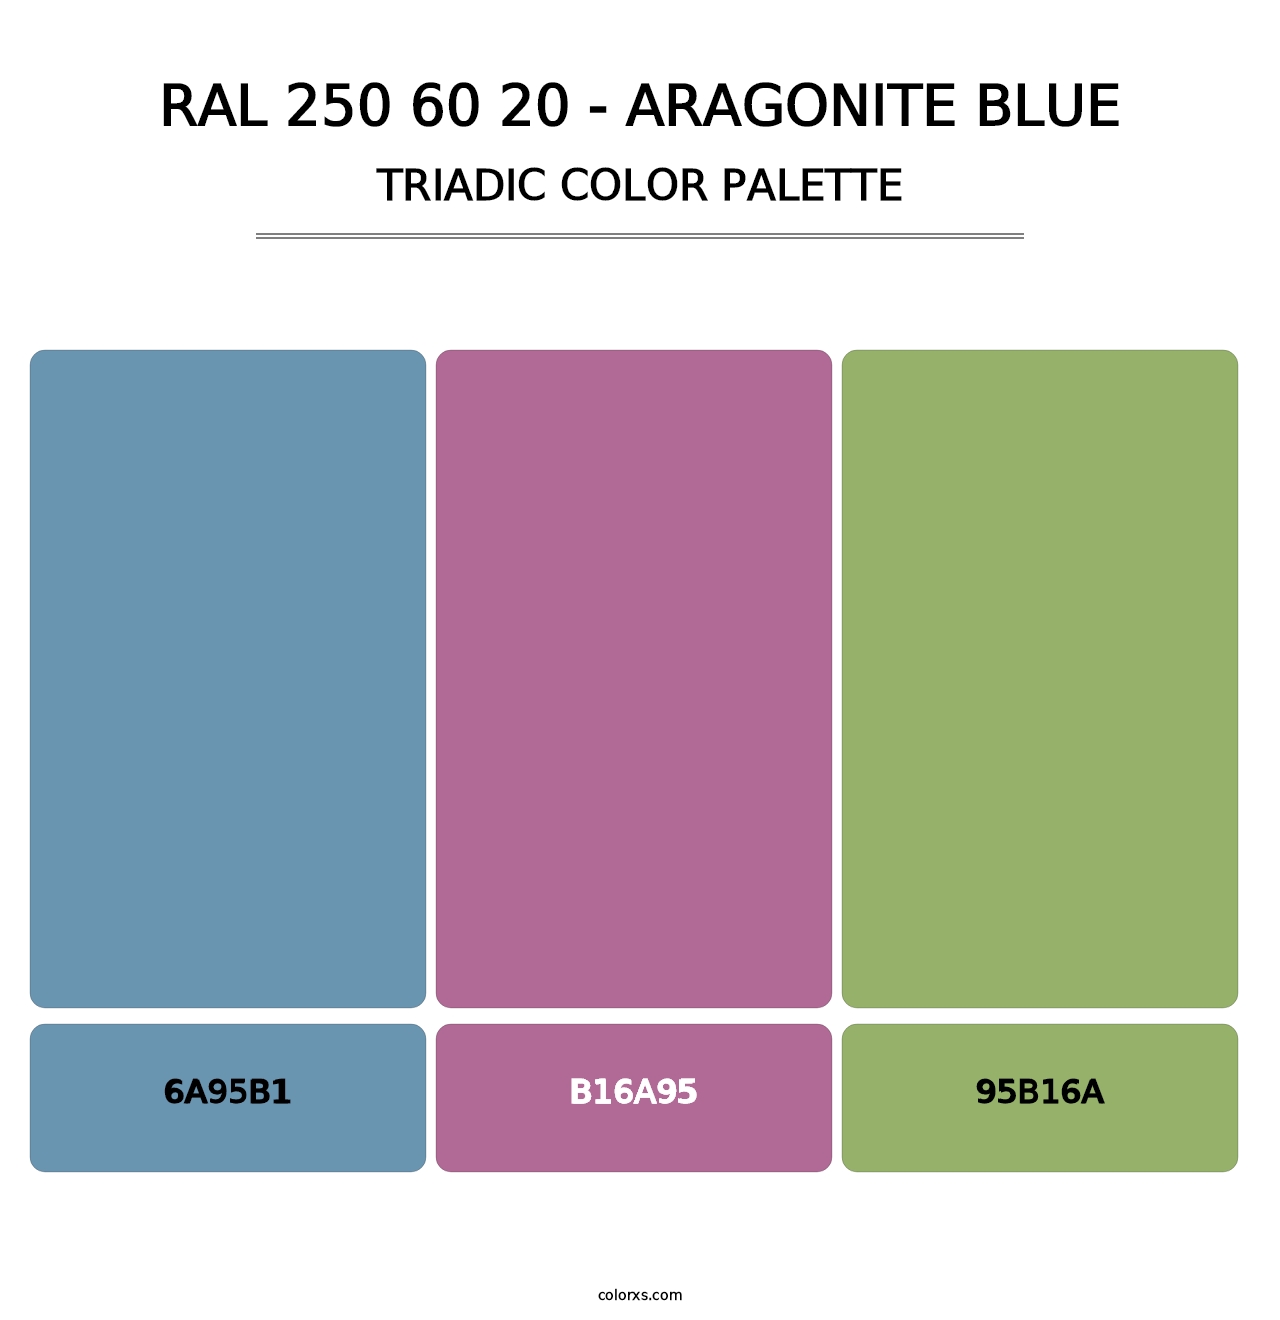 RAL 250 60 20 - Aragonite Blue - Triadic Color Palette